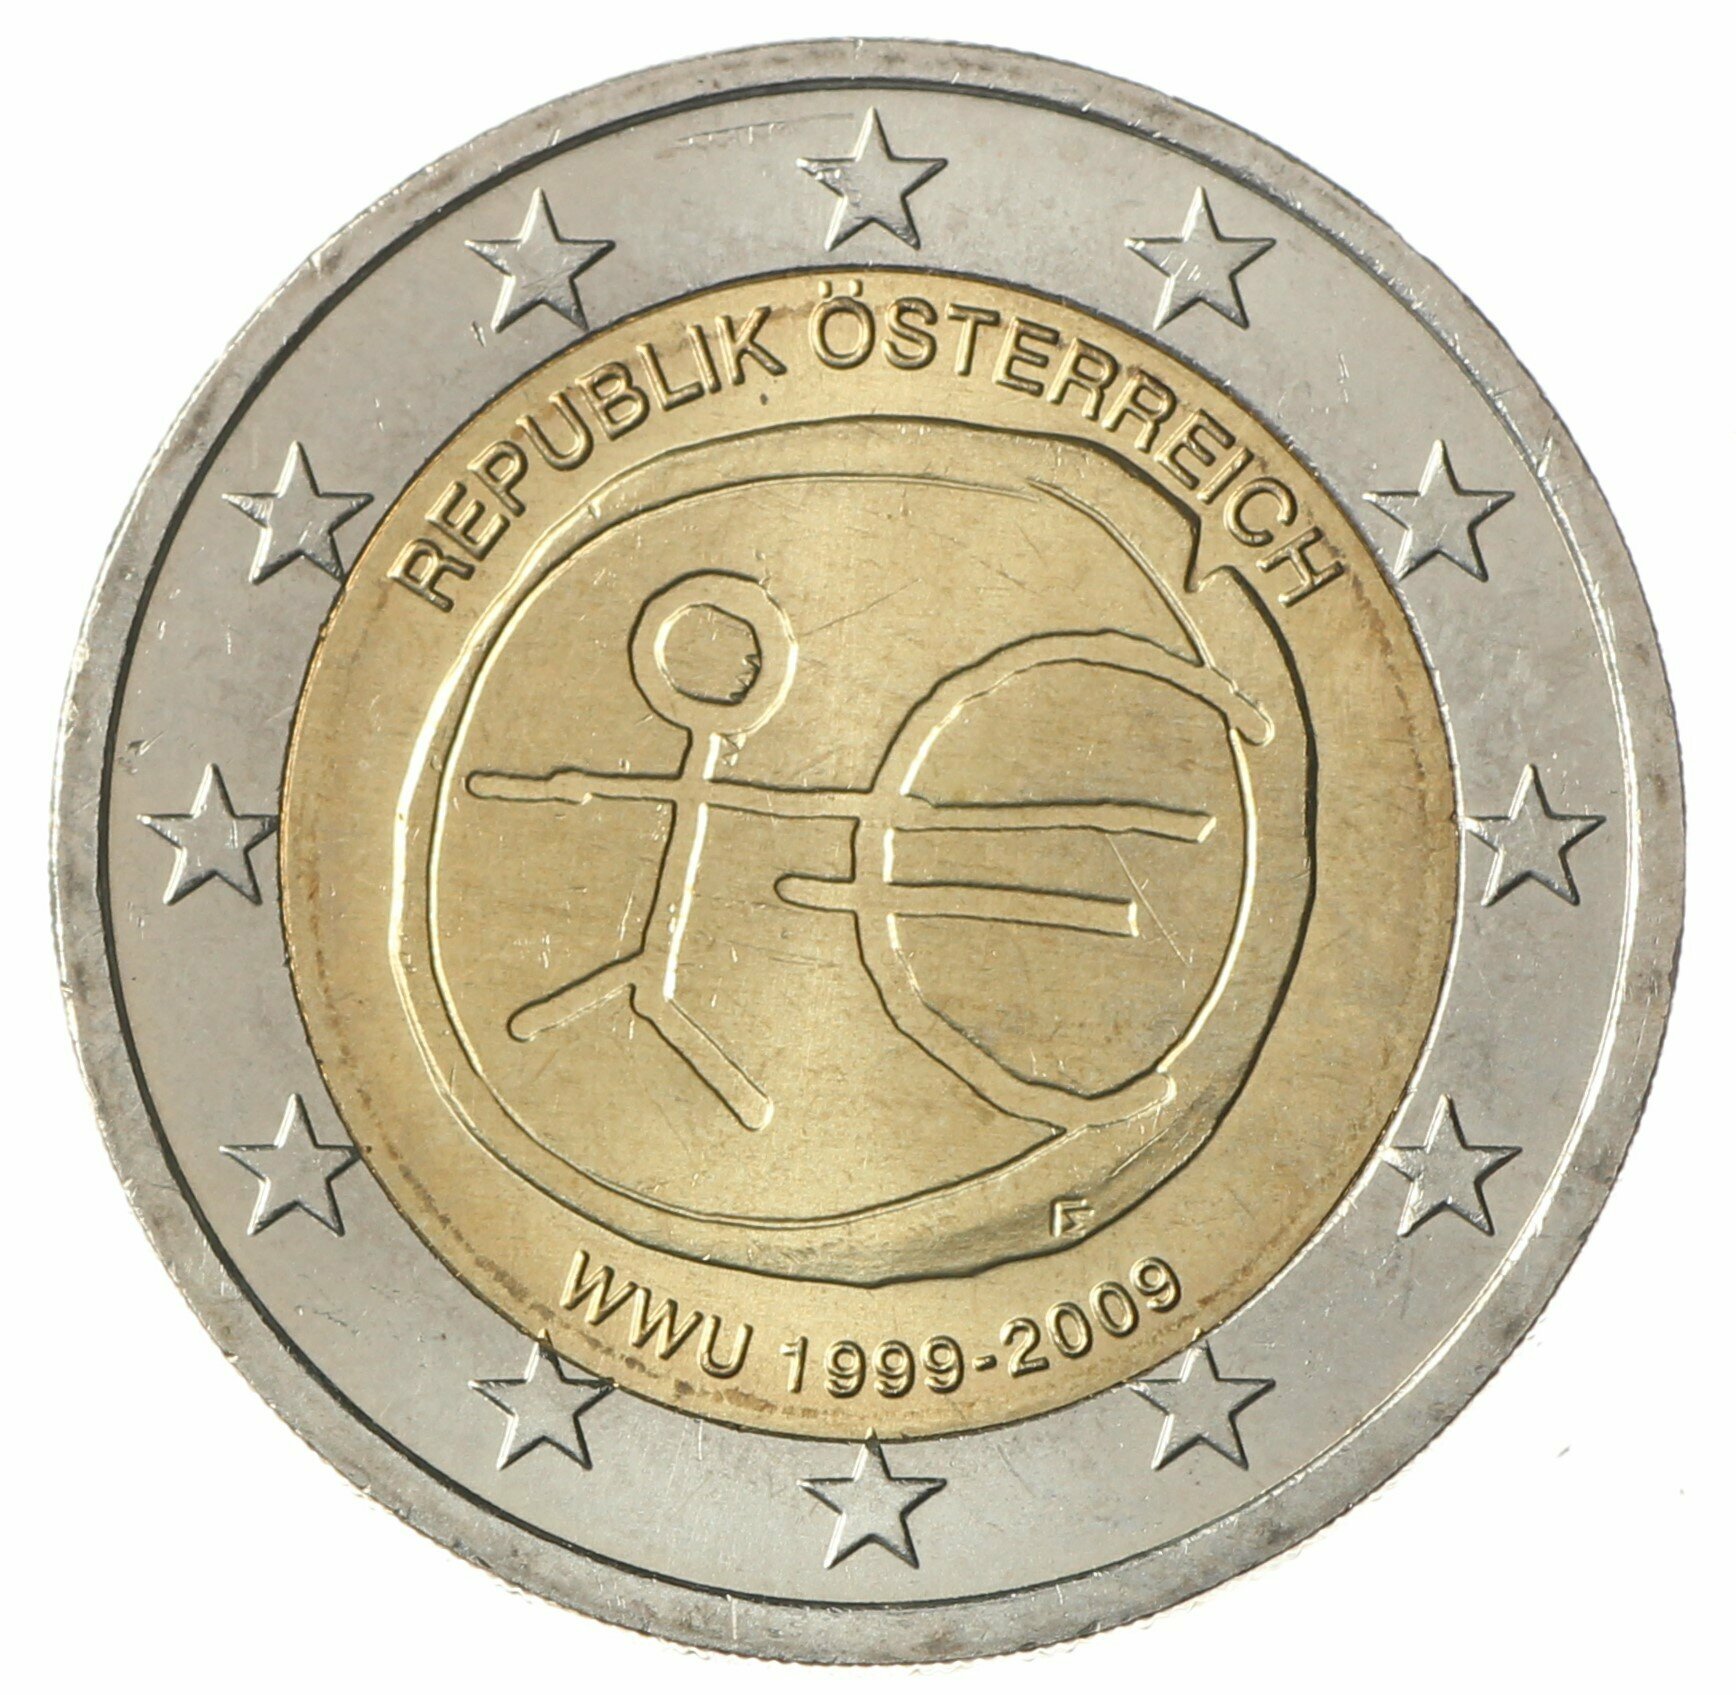 Австрия 2 евро 2009 10 лет экономическому и валютному союзу